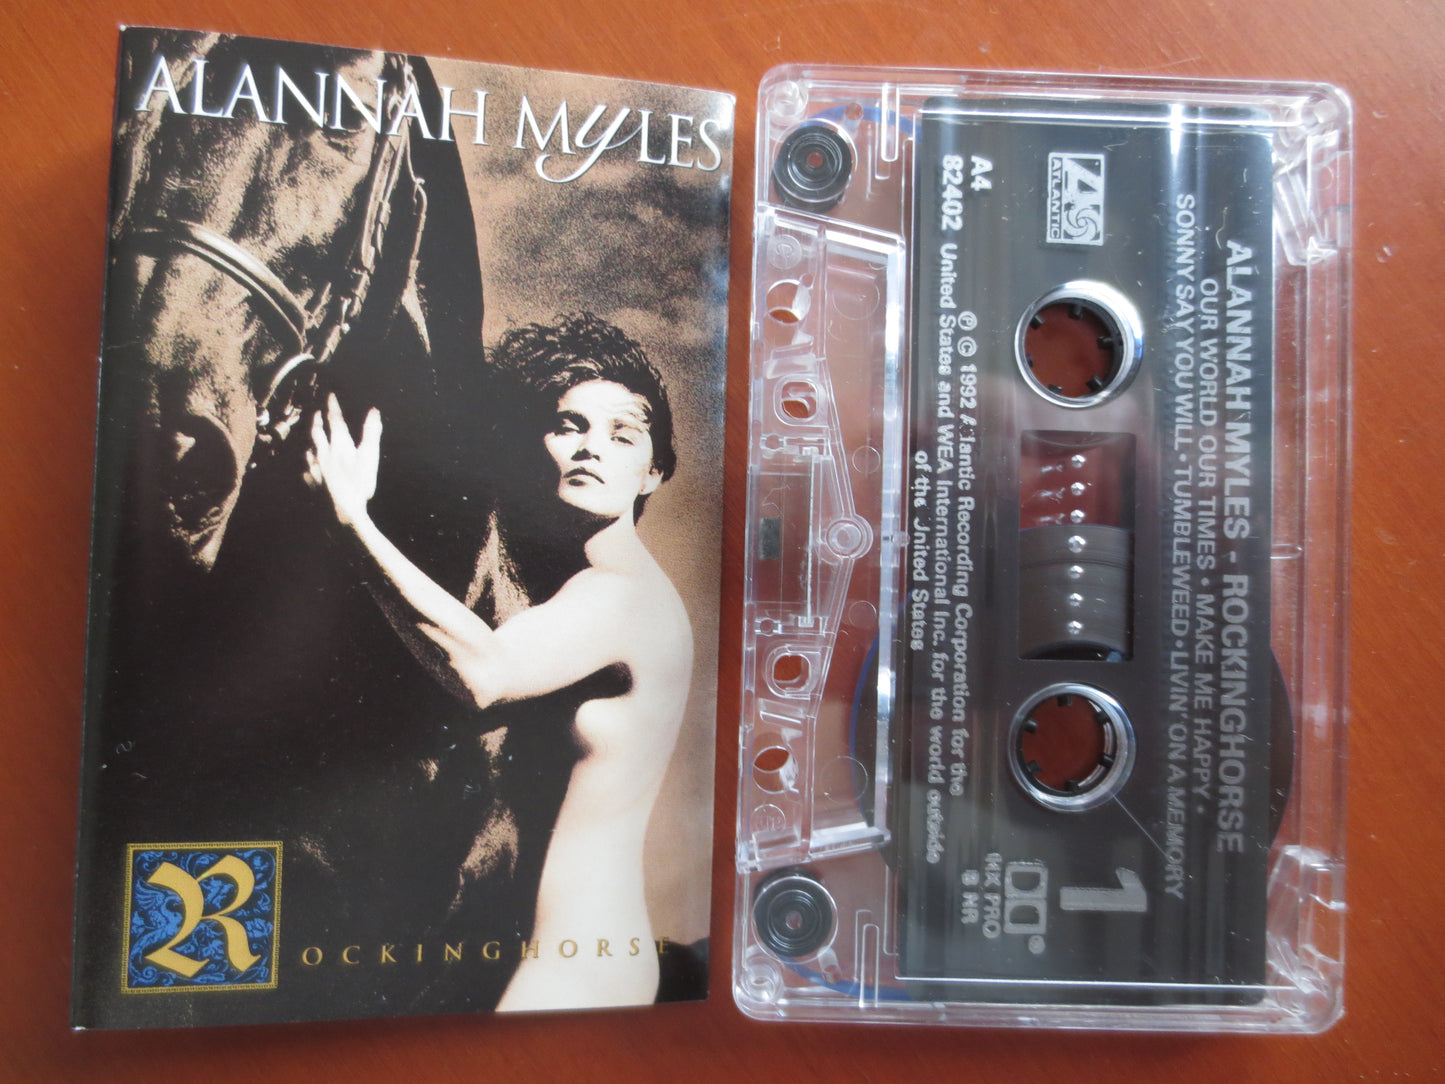 ALANNAH MYLES, ROCKINGHORSE, Alannah Myles Tape, Alannah Myles Album, Vintage Tapes, Tape Cassette, Cassette, 1992 Cassette